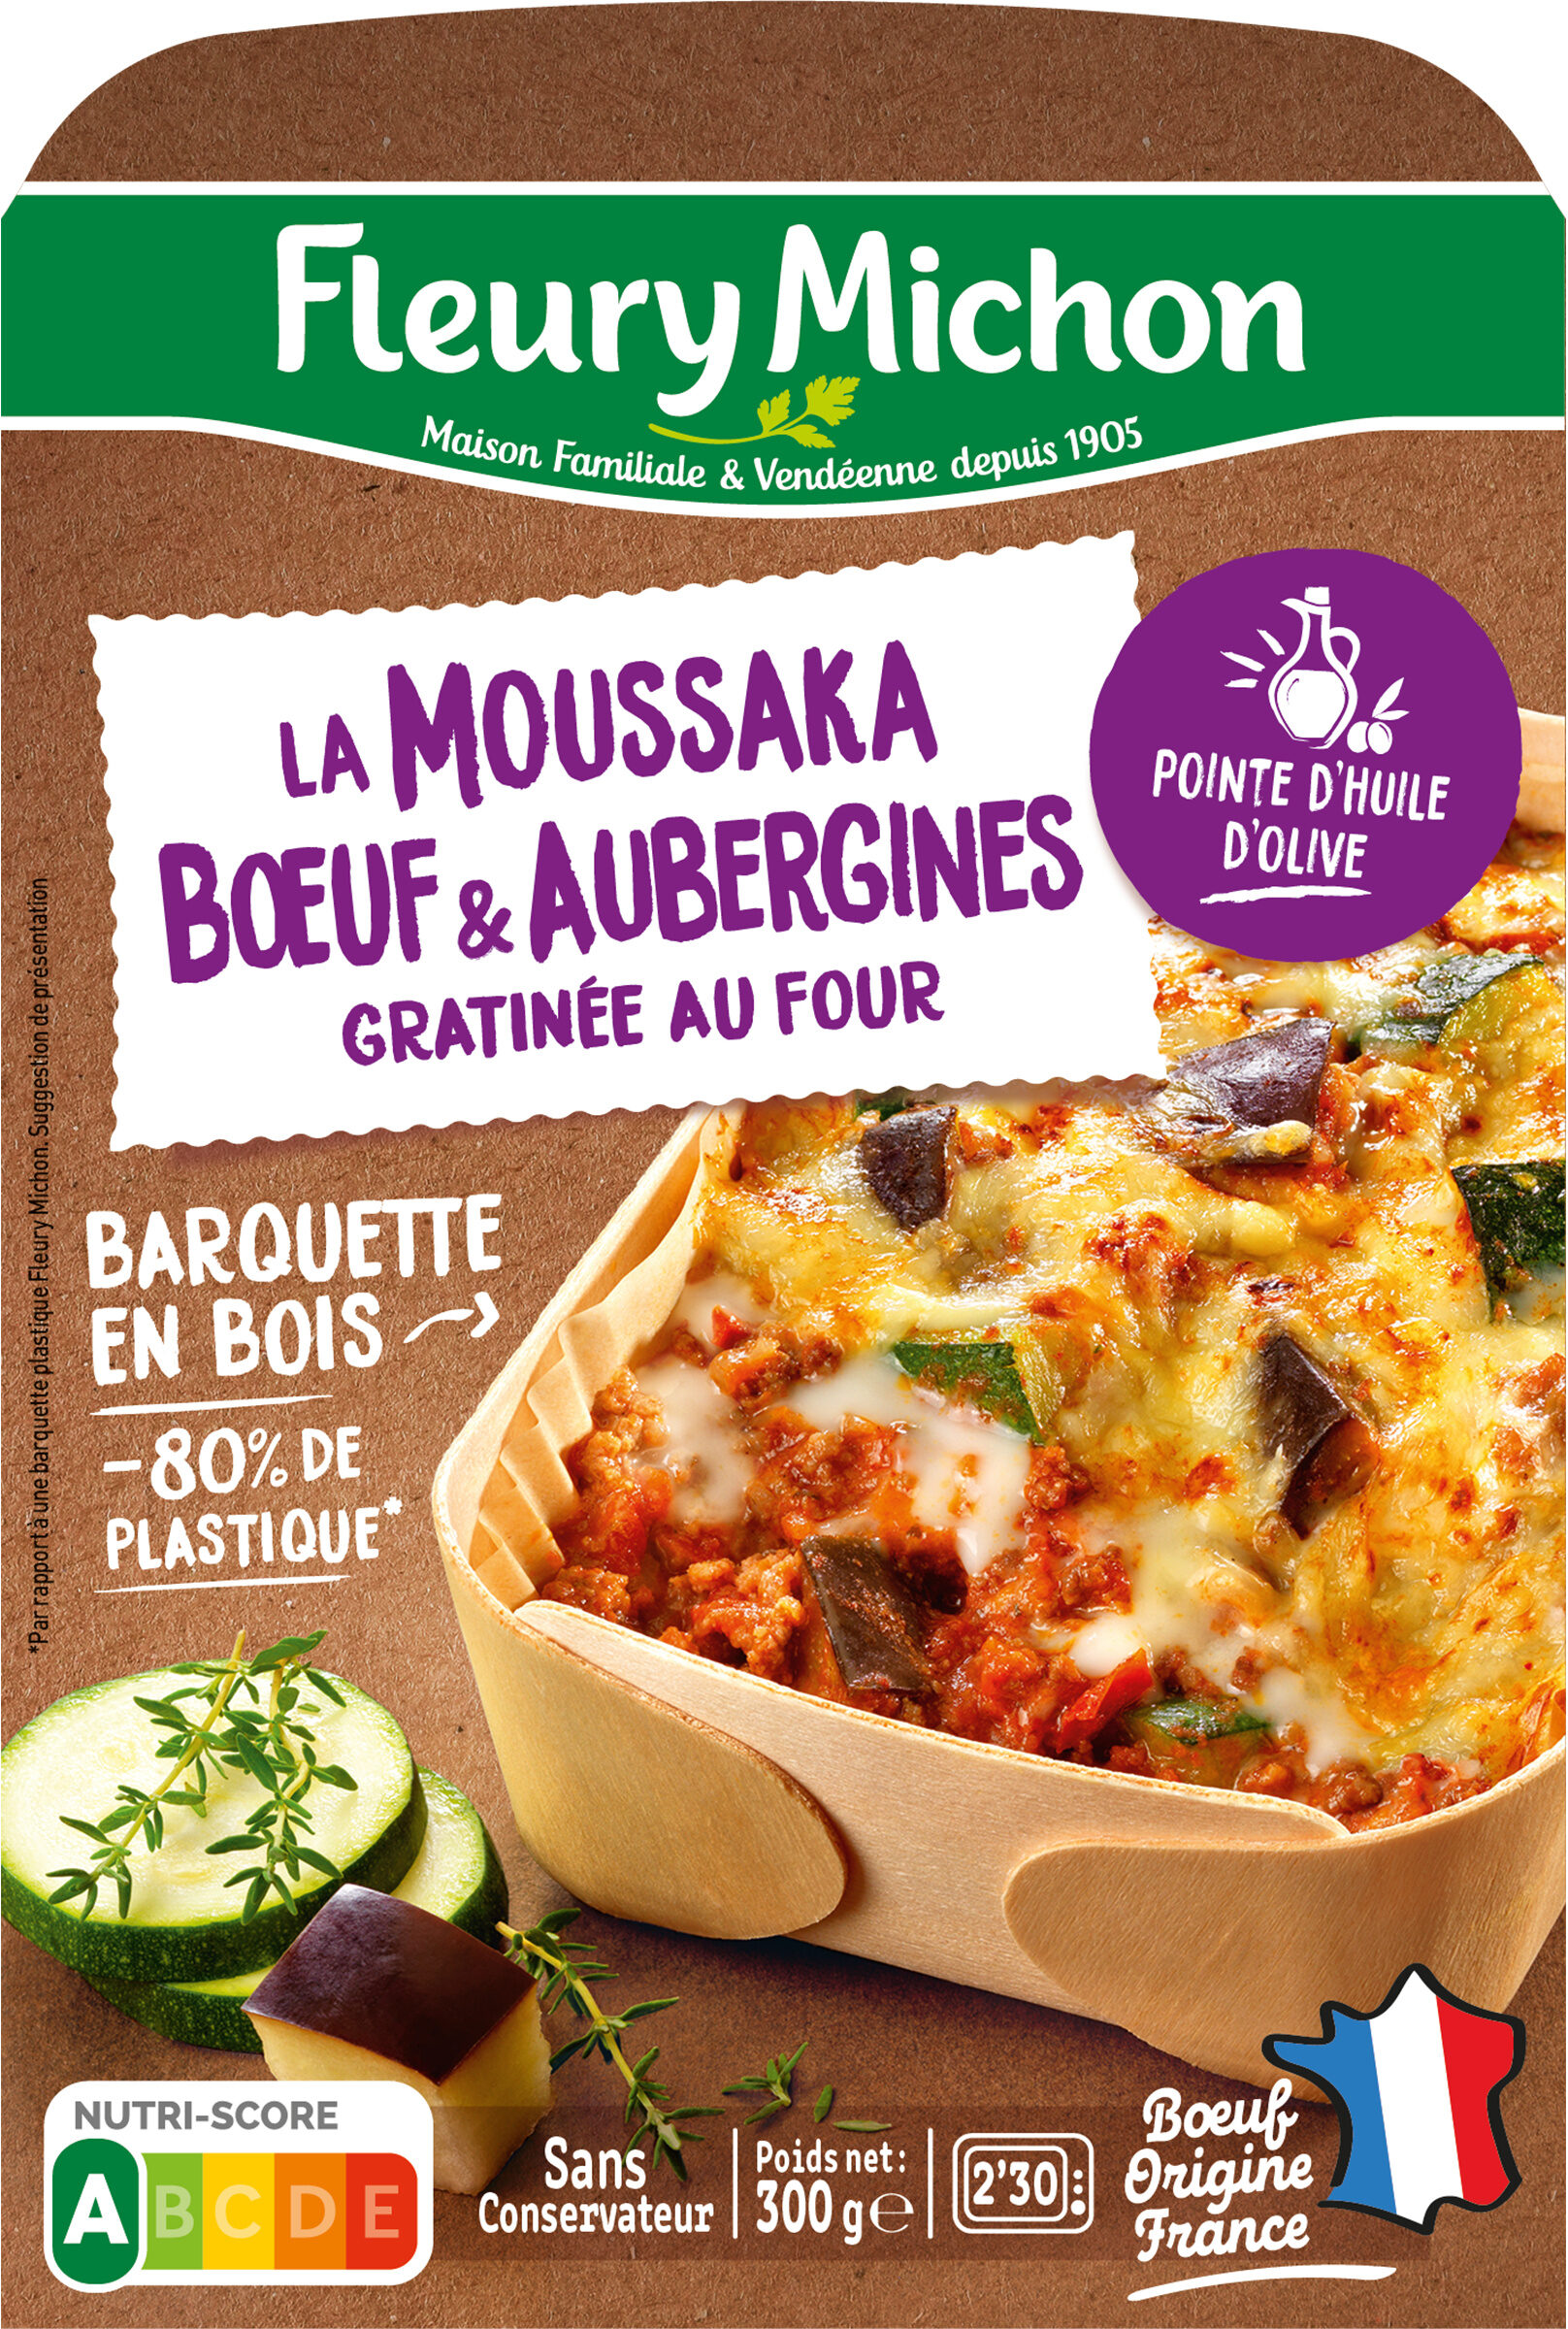 La Moussaka Boeuf & Aubergines avec une touche de menthe douce - Produit